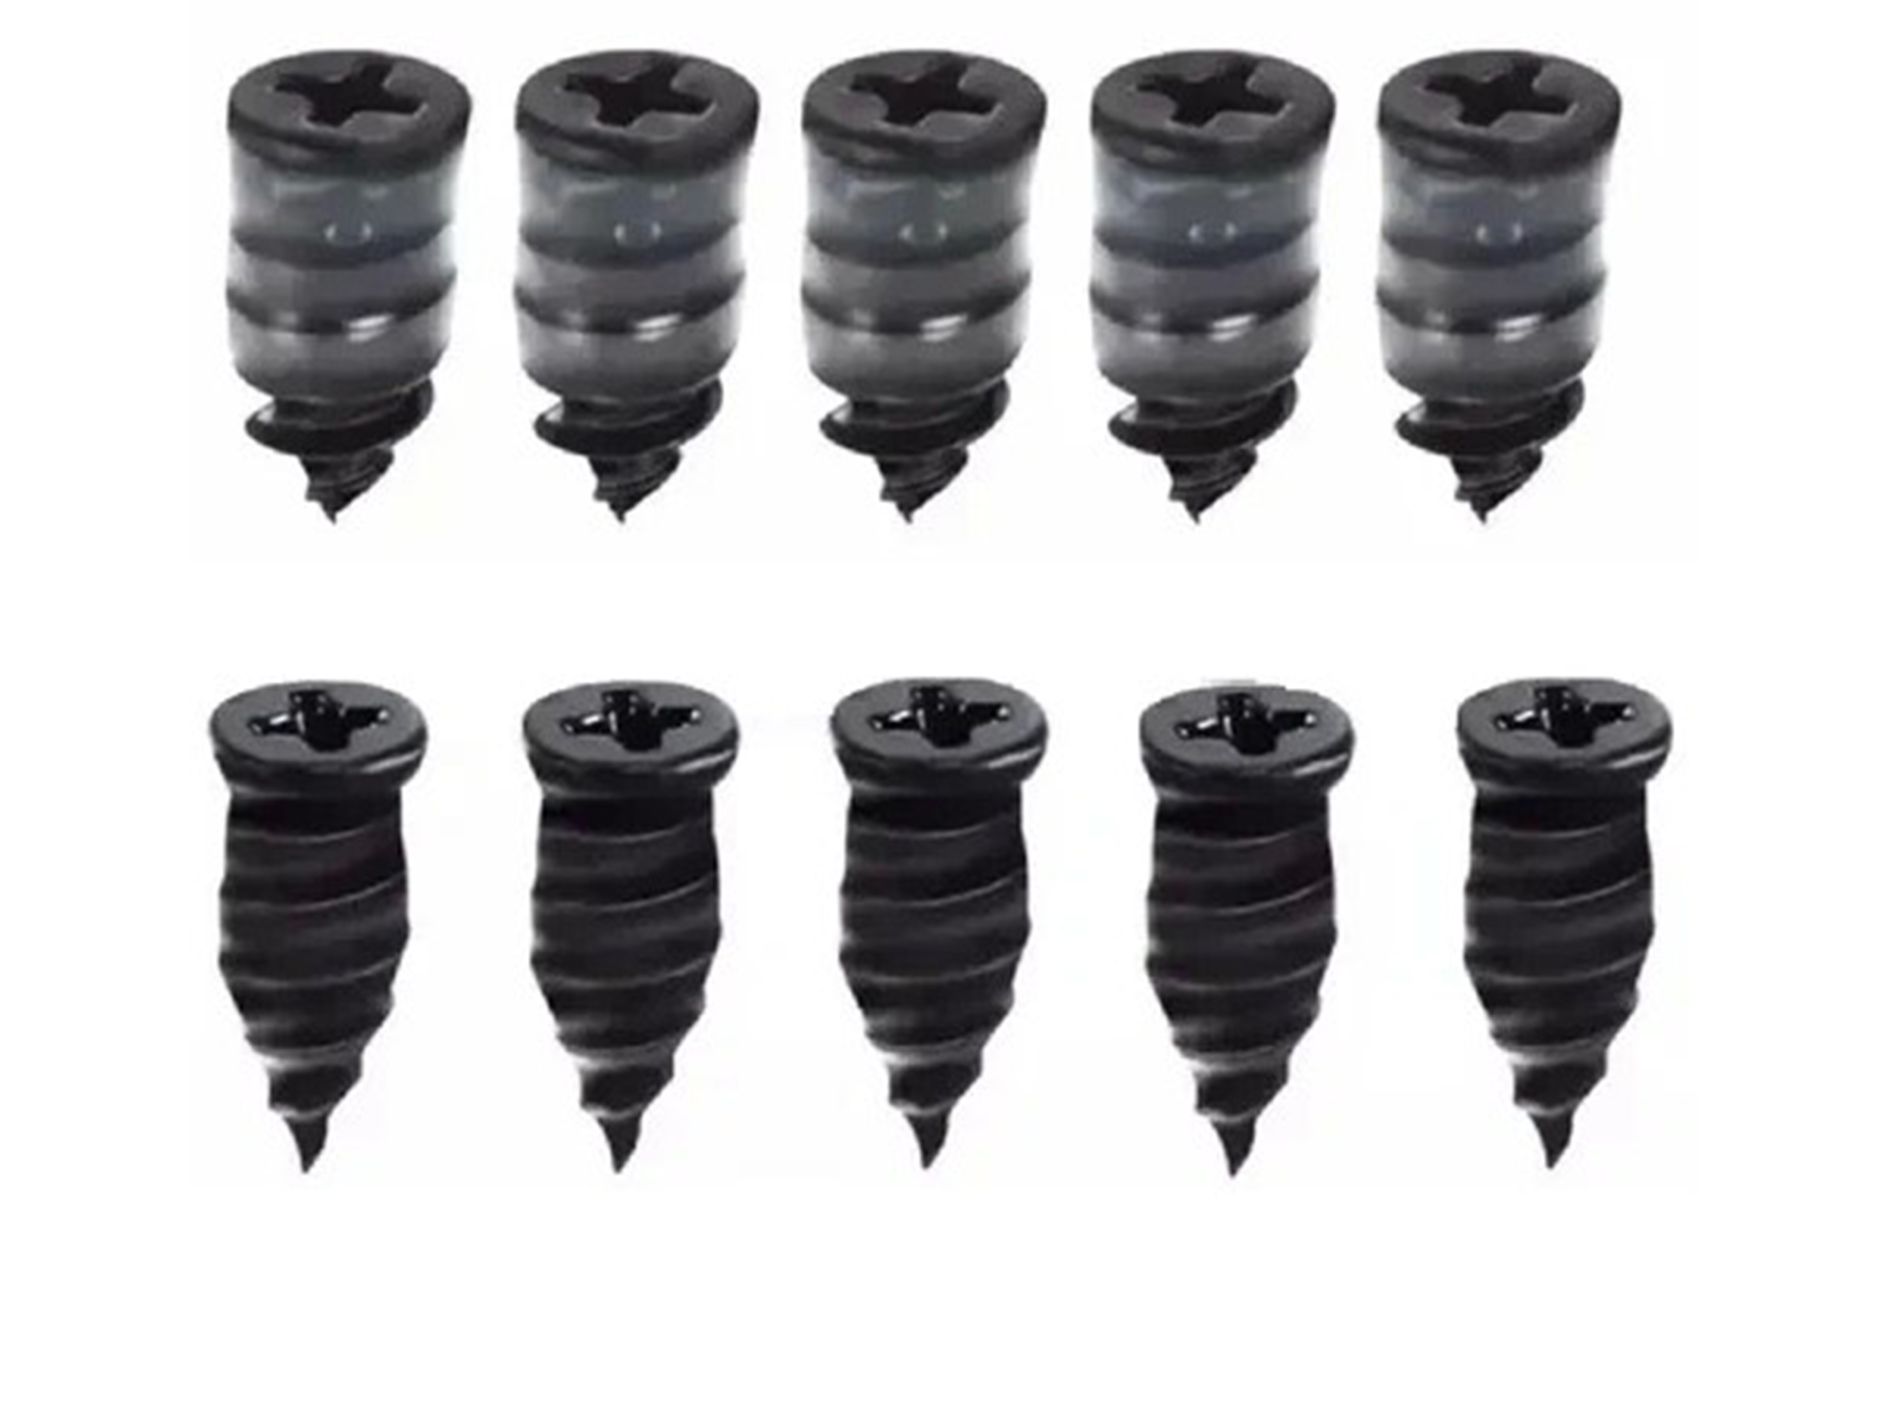 Aoha Repair Tyre Kit Набор для быстрого ремонта бескамерных шин Саморезы с герметиком на резьбе 10 шт (5S+5L)